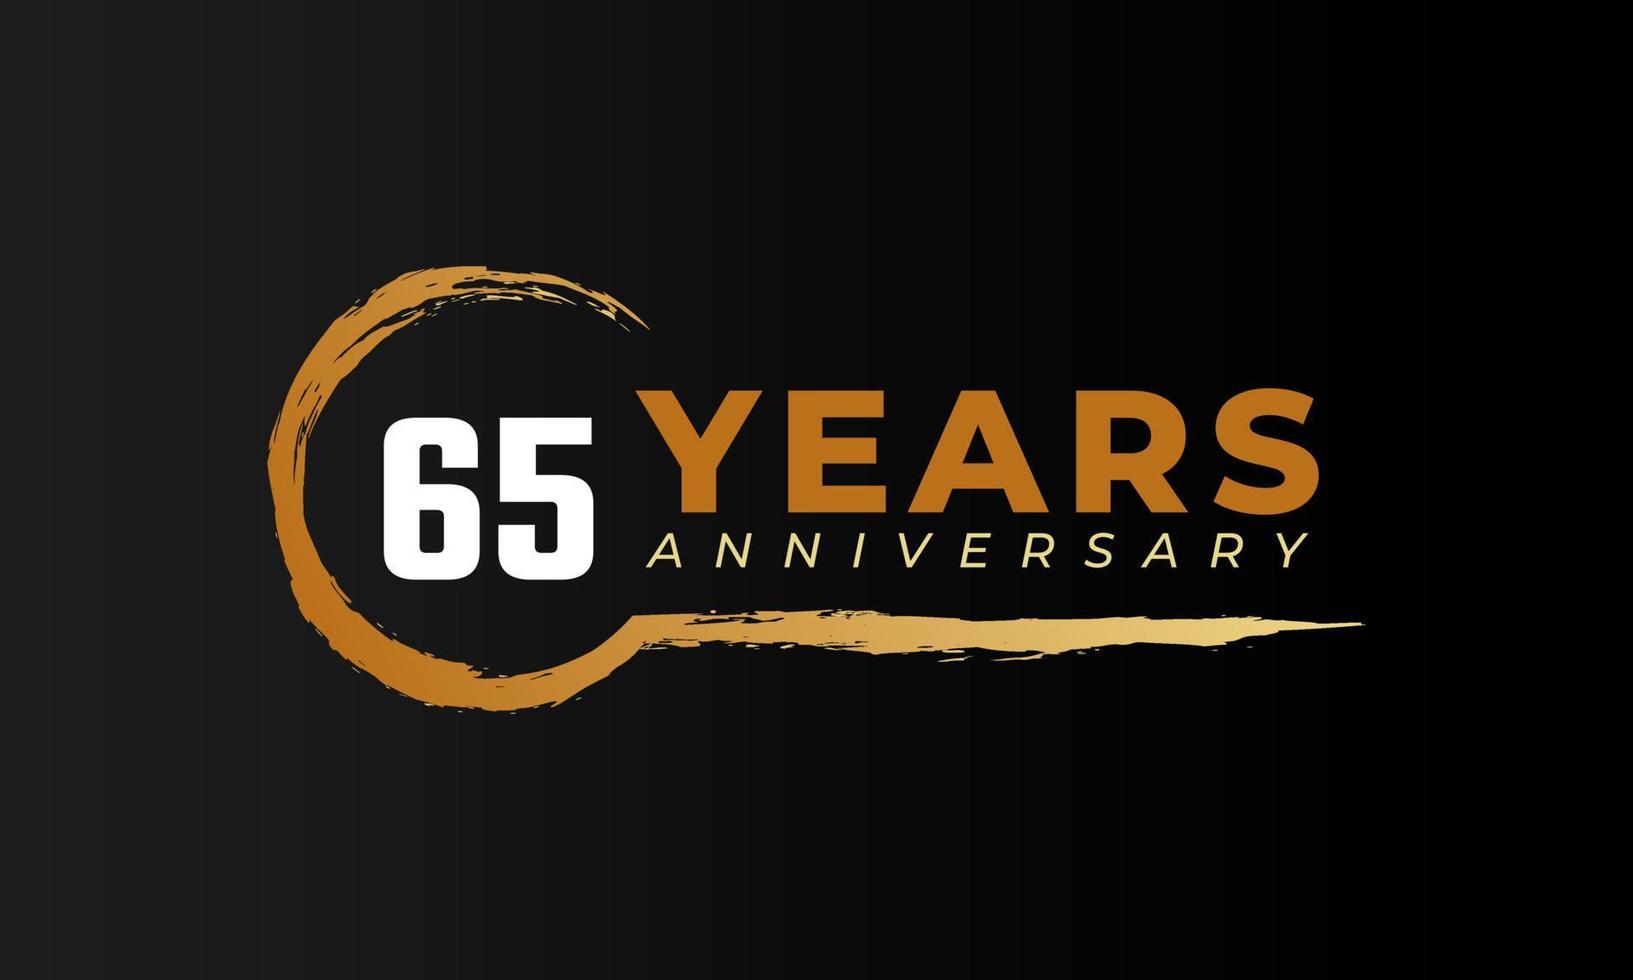 65-jarig jubileumfeest met cirkelborstel in gouden kleur. gelukkige verjaardag groet viert gebeurtenis geïsoleerd op zwarte achtergrond vector